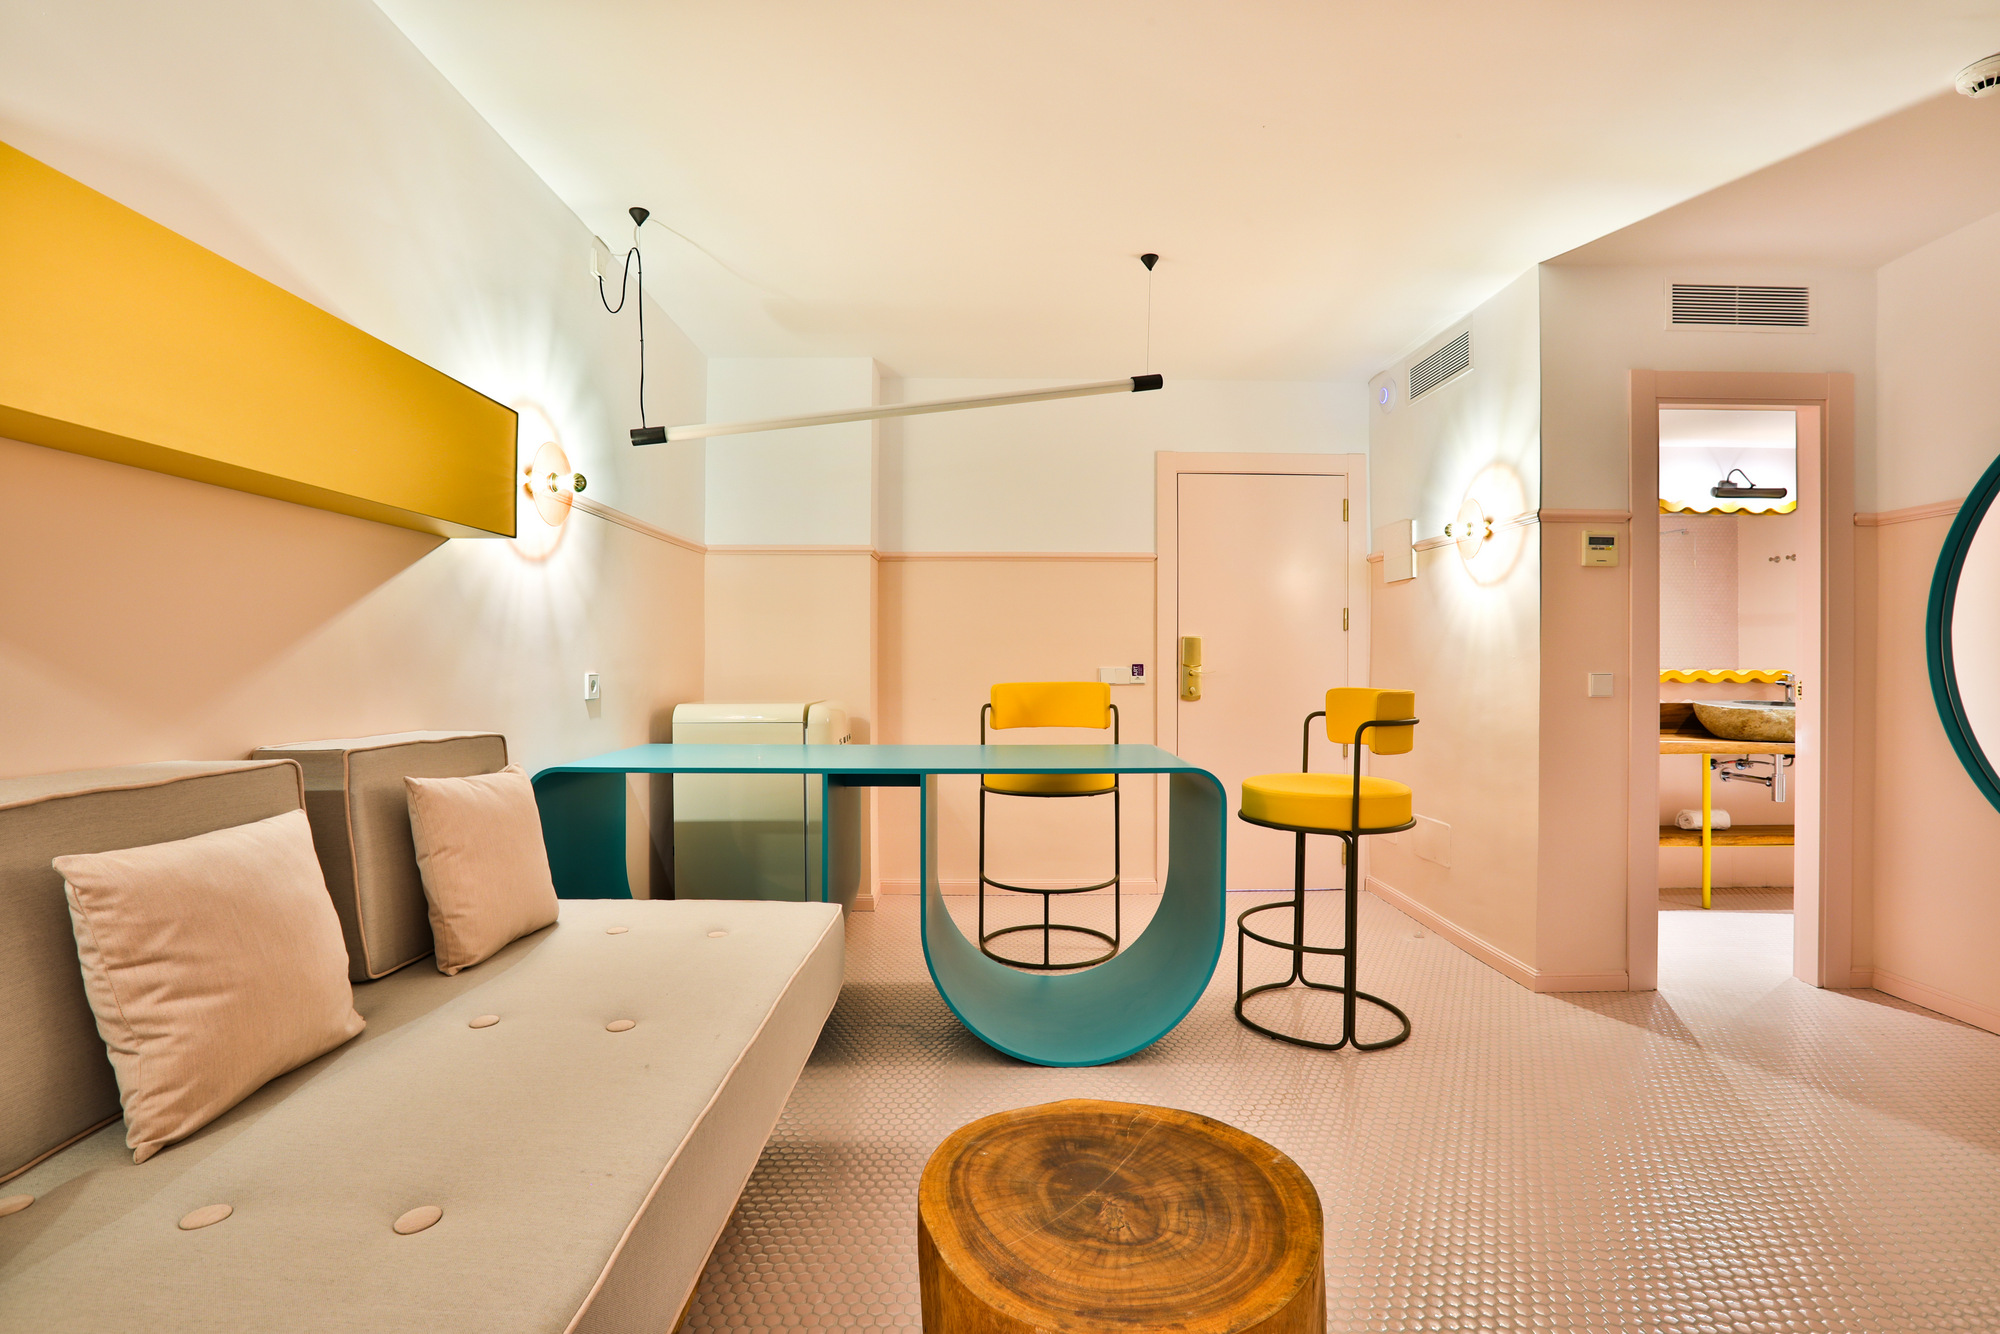 图片[15]|伊维萨Paradiso艺术酒店|ART-Arrakis | 建筑室内设计的创新与灵感